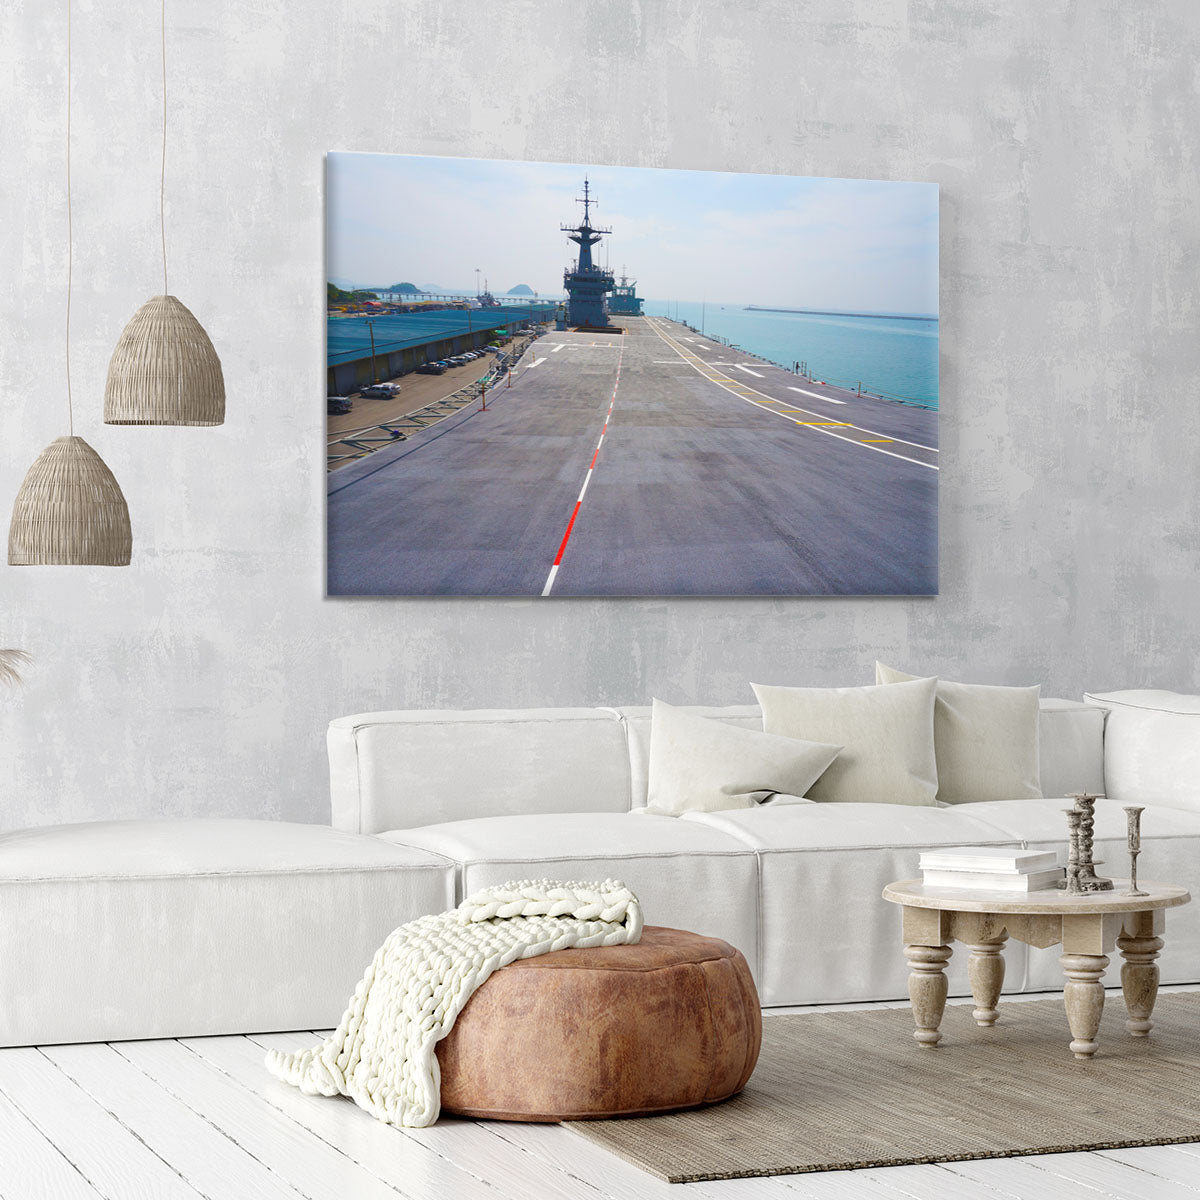 Flight deck of an aircraft carrier Canvas Print or Poster - Canvas Art Rocks - 6